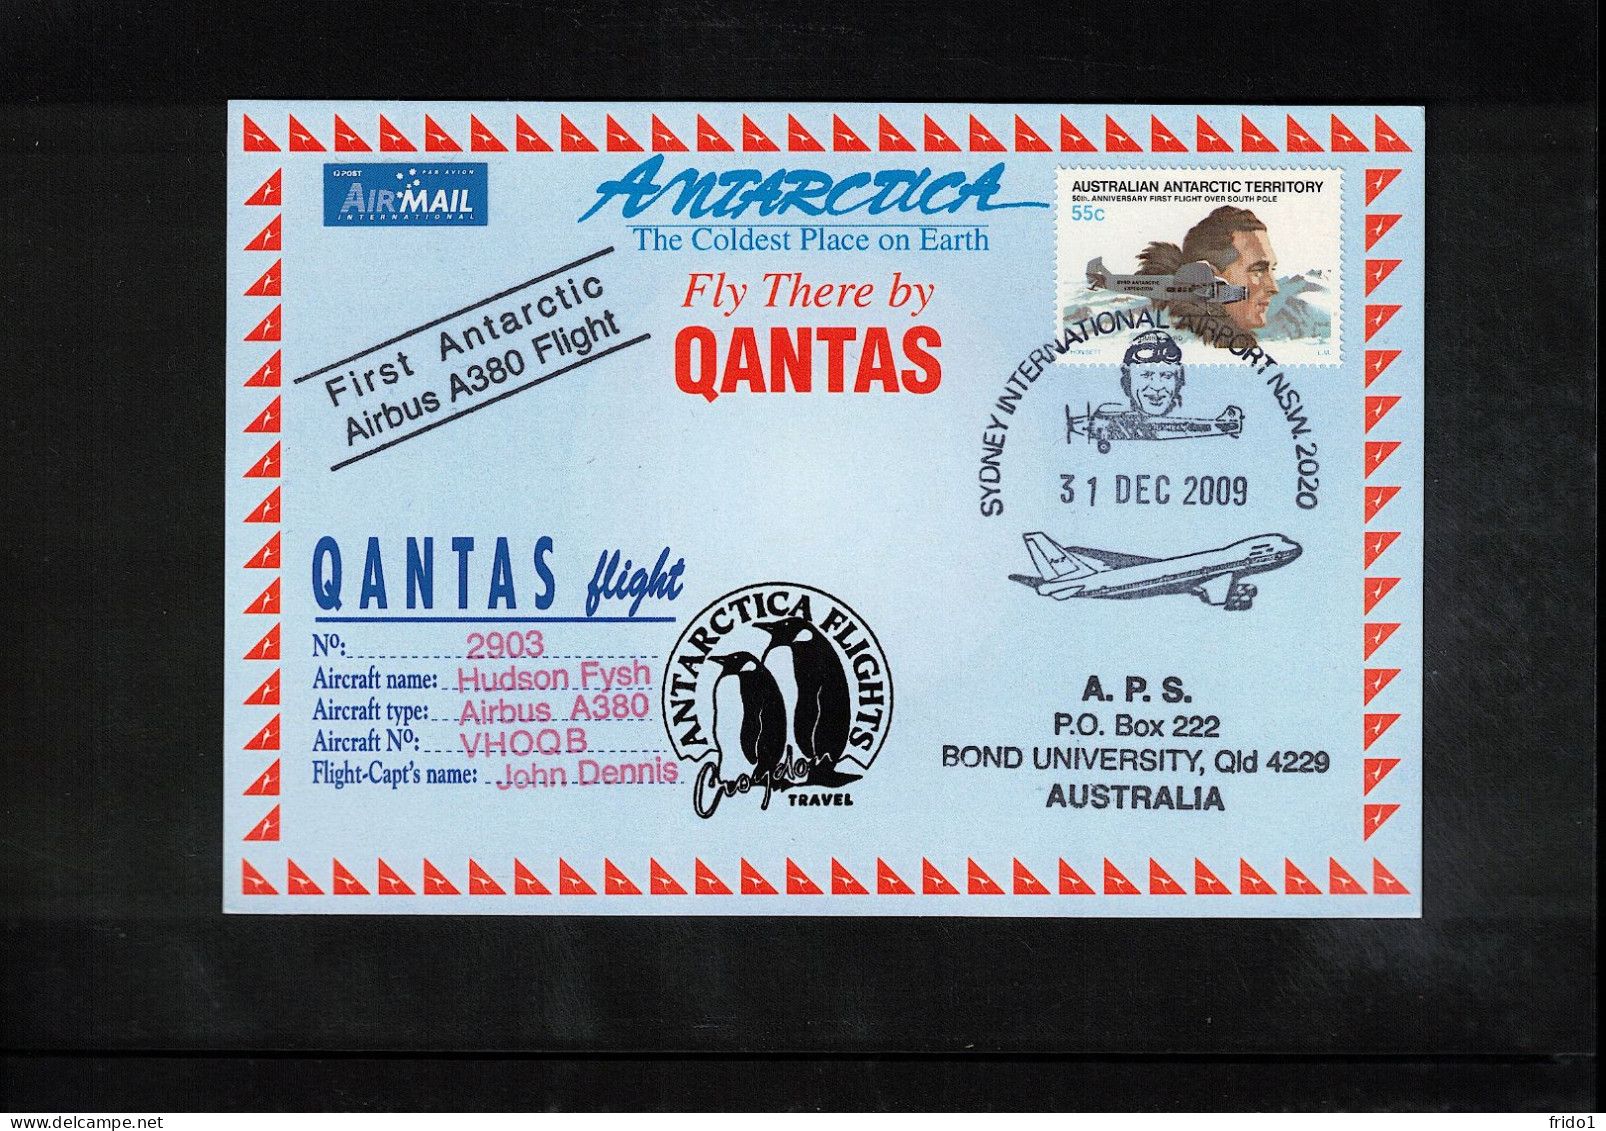 AAT 2009 Antarctica - Quantas Antarctica Flight - First Antarctica Airbus A380 Flight - Polar Flights